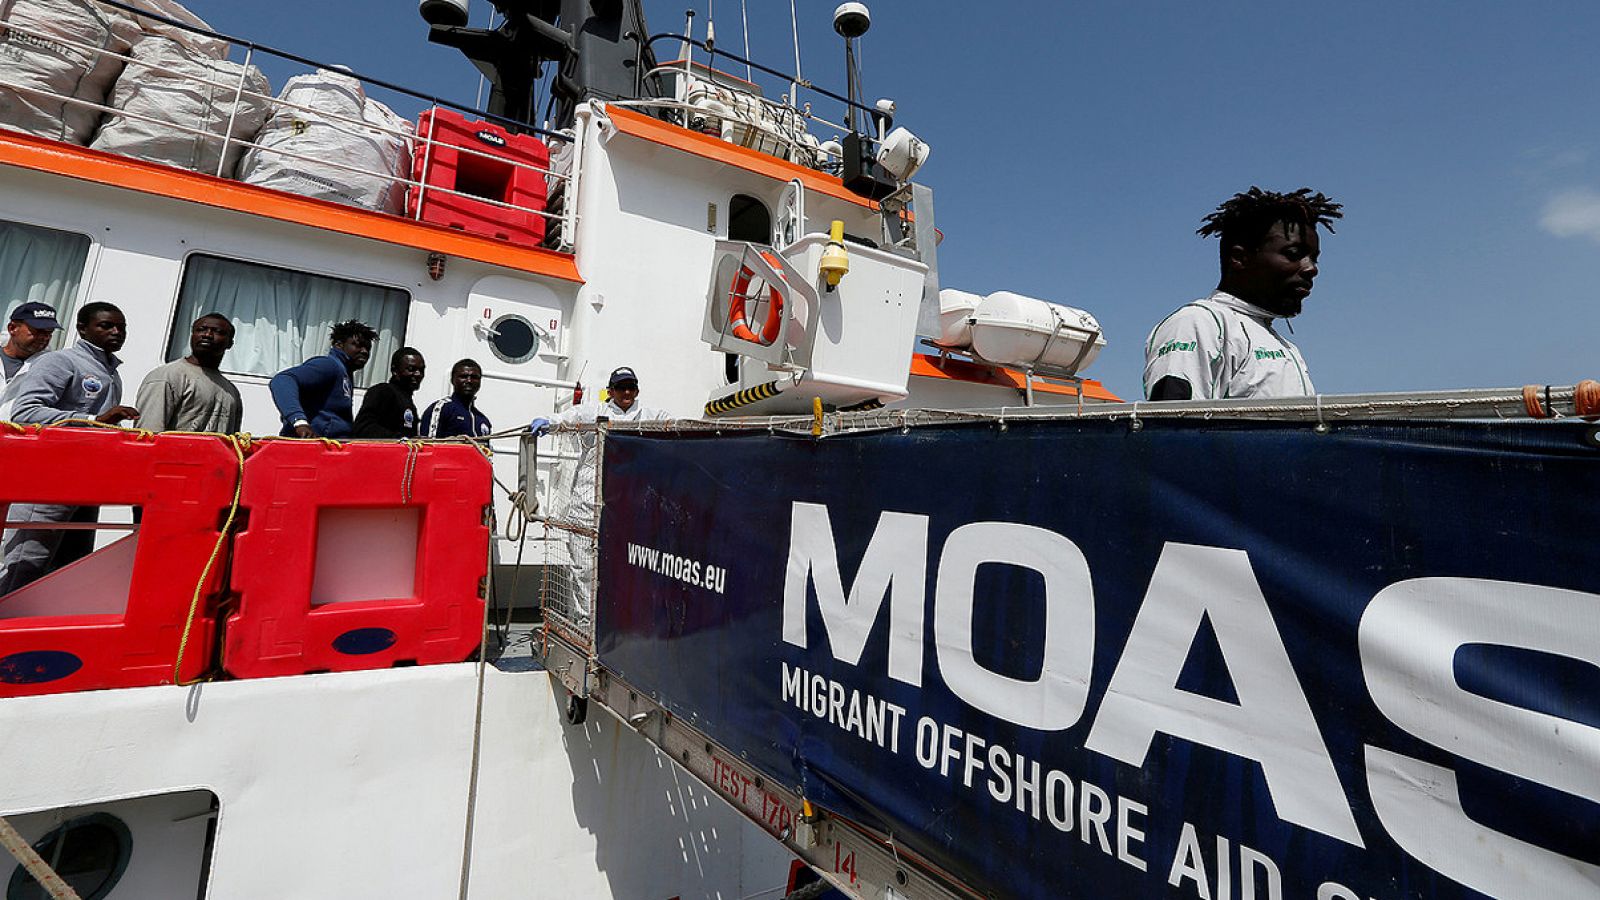 Migrantes rescatados en el Mediterráneo desembarcan del barco Phoenix, de la ONG MOAS, en la isla de Sicilia, Italia